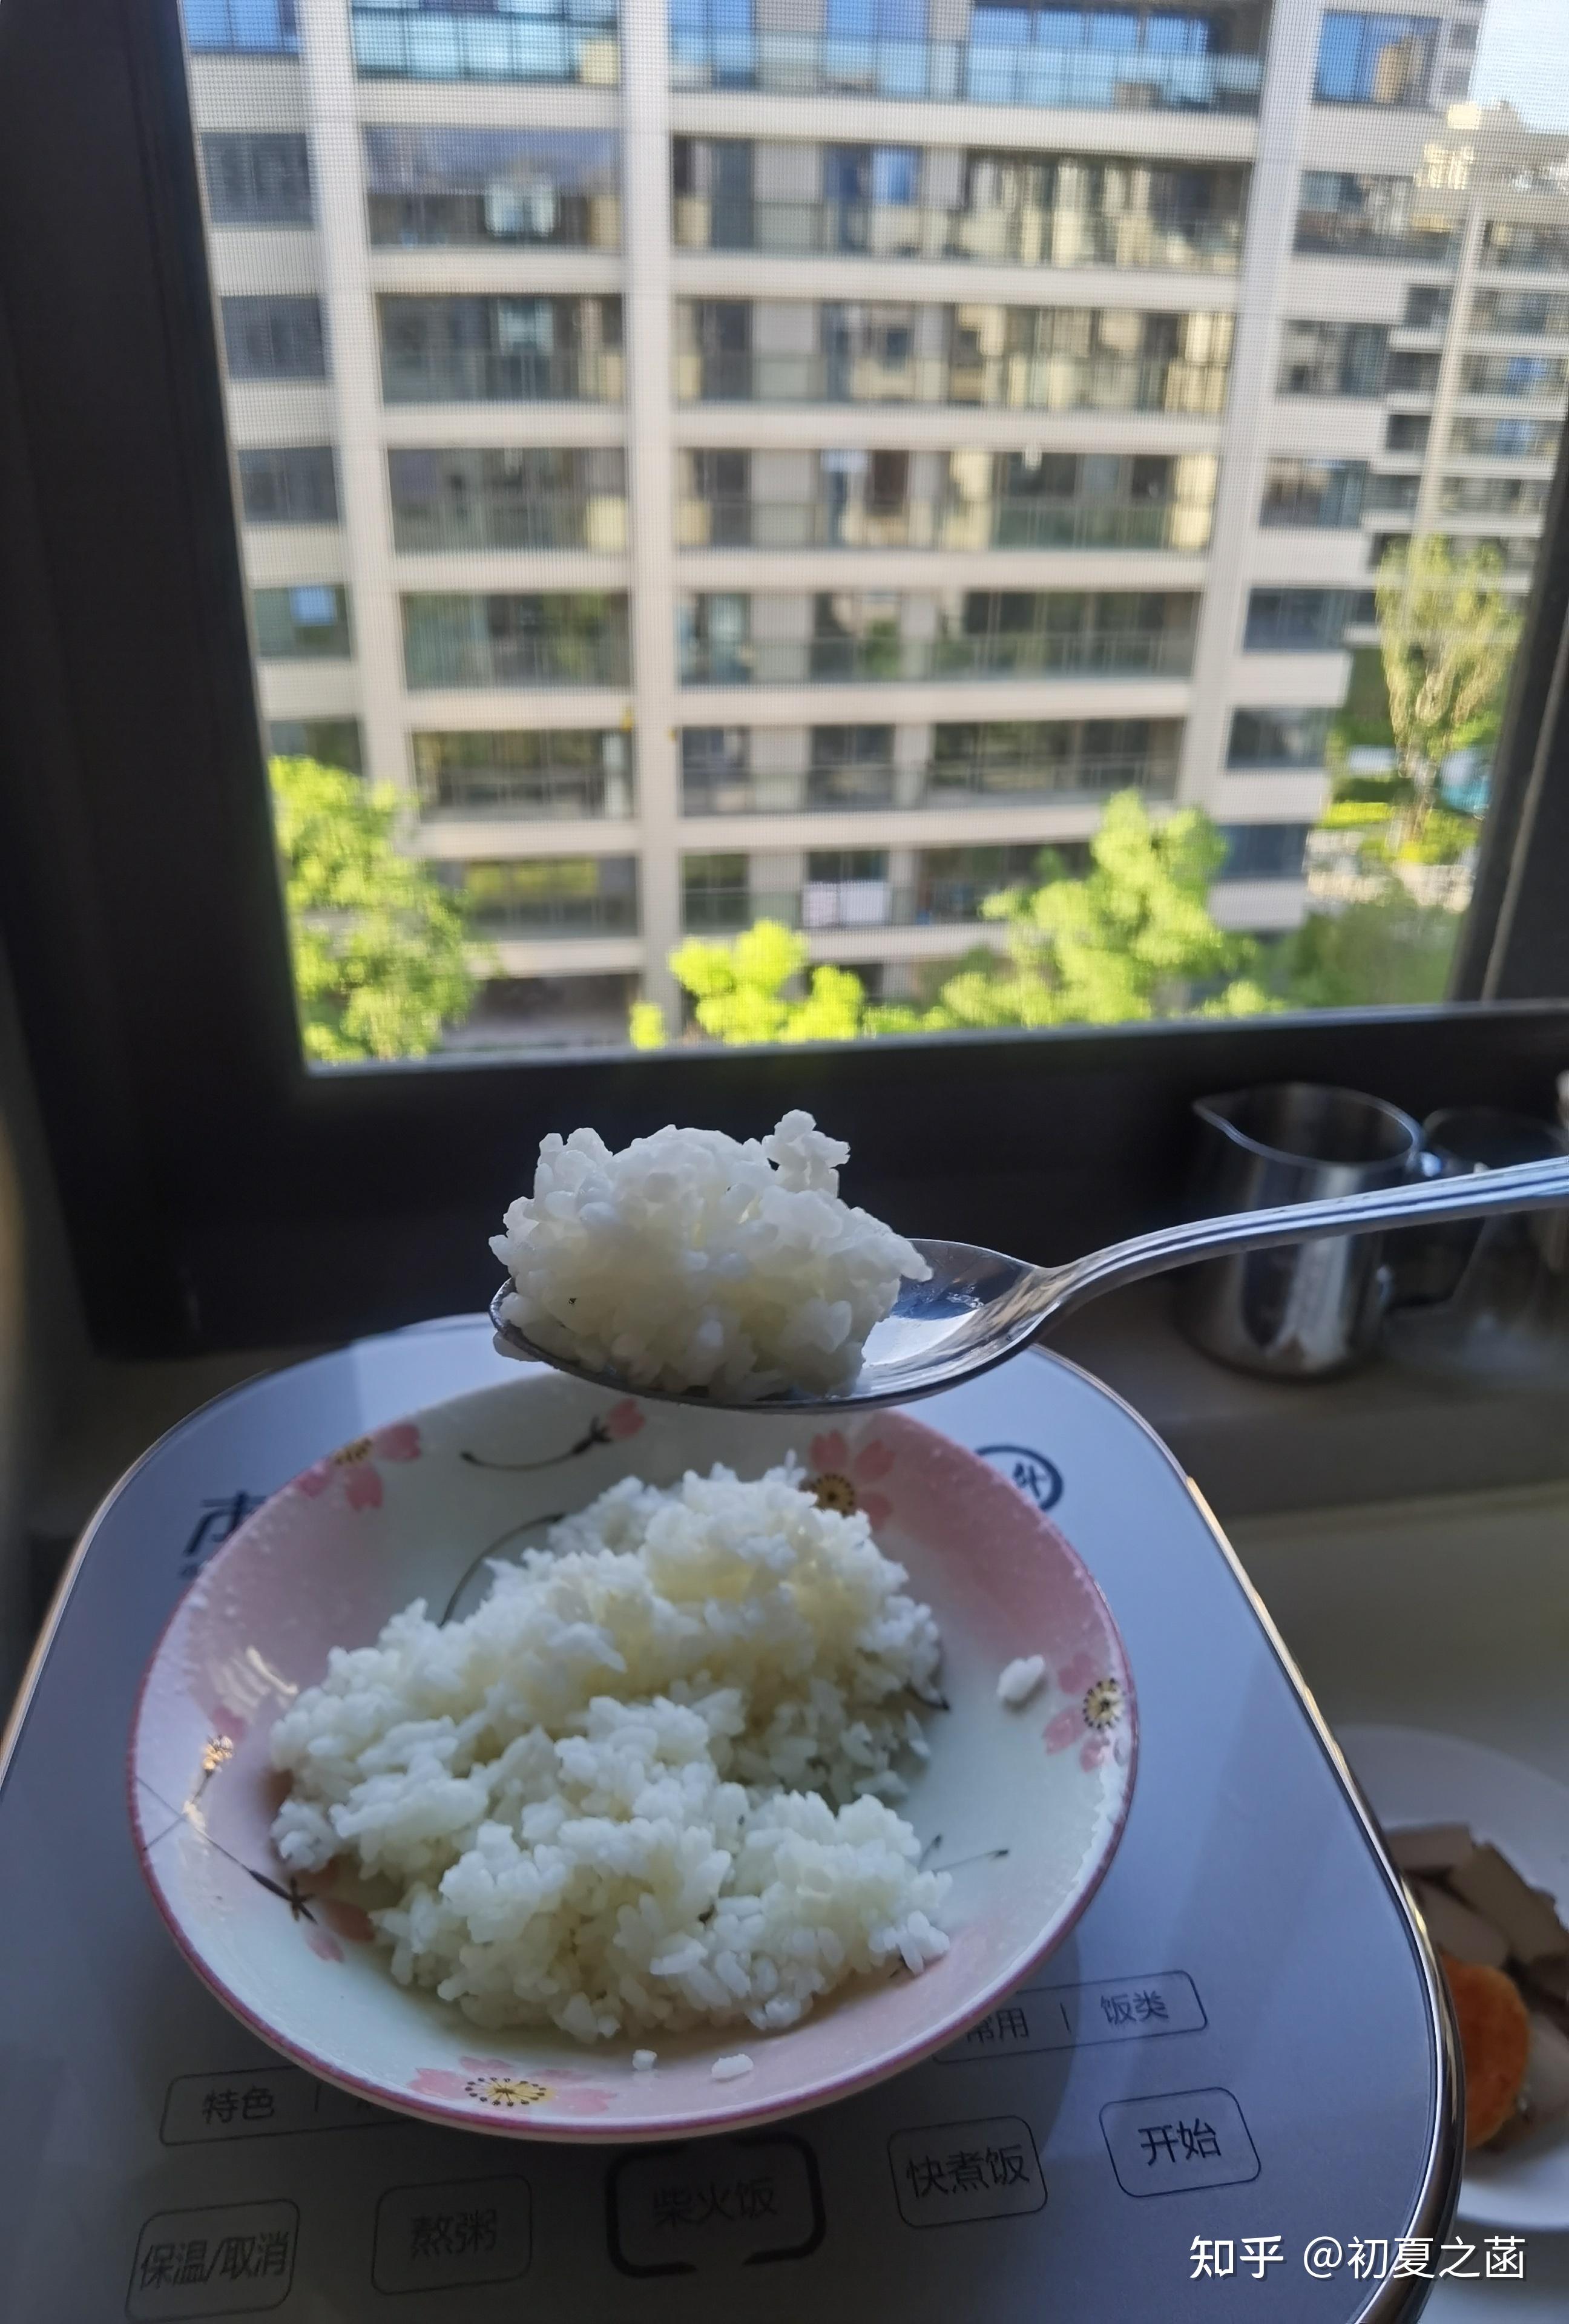 蒸大米饭米和水的比例 - 匠子生活